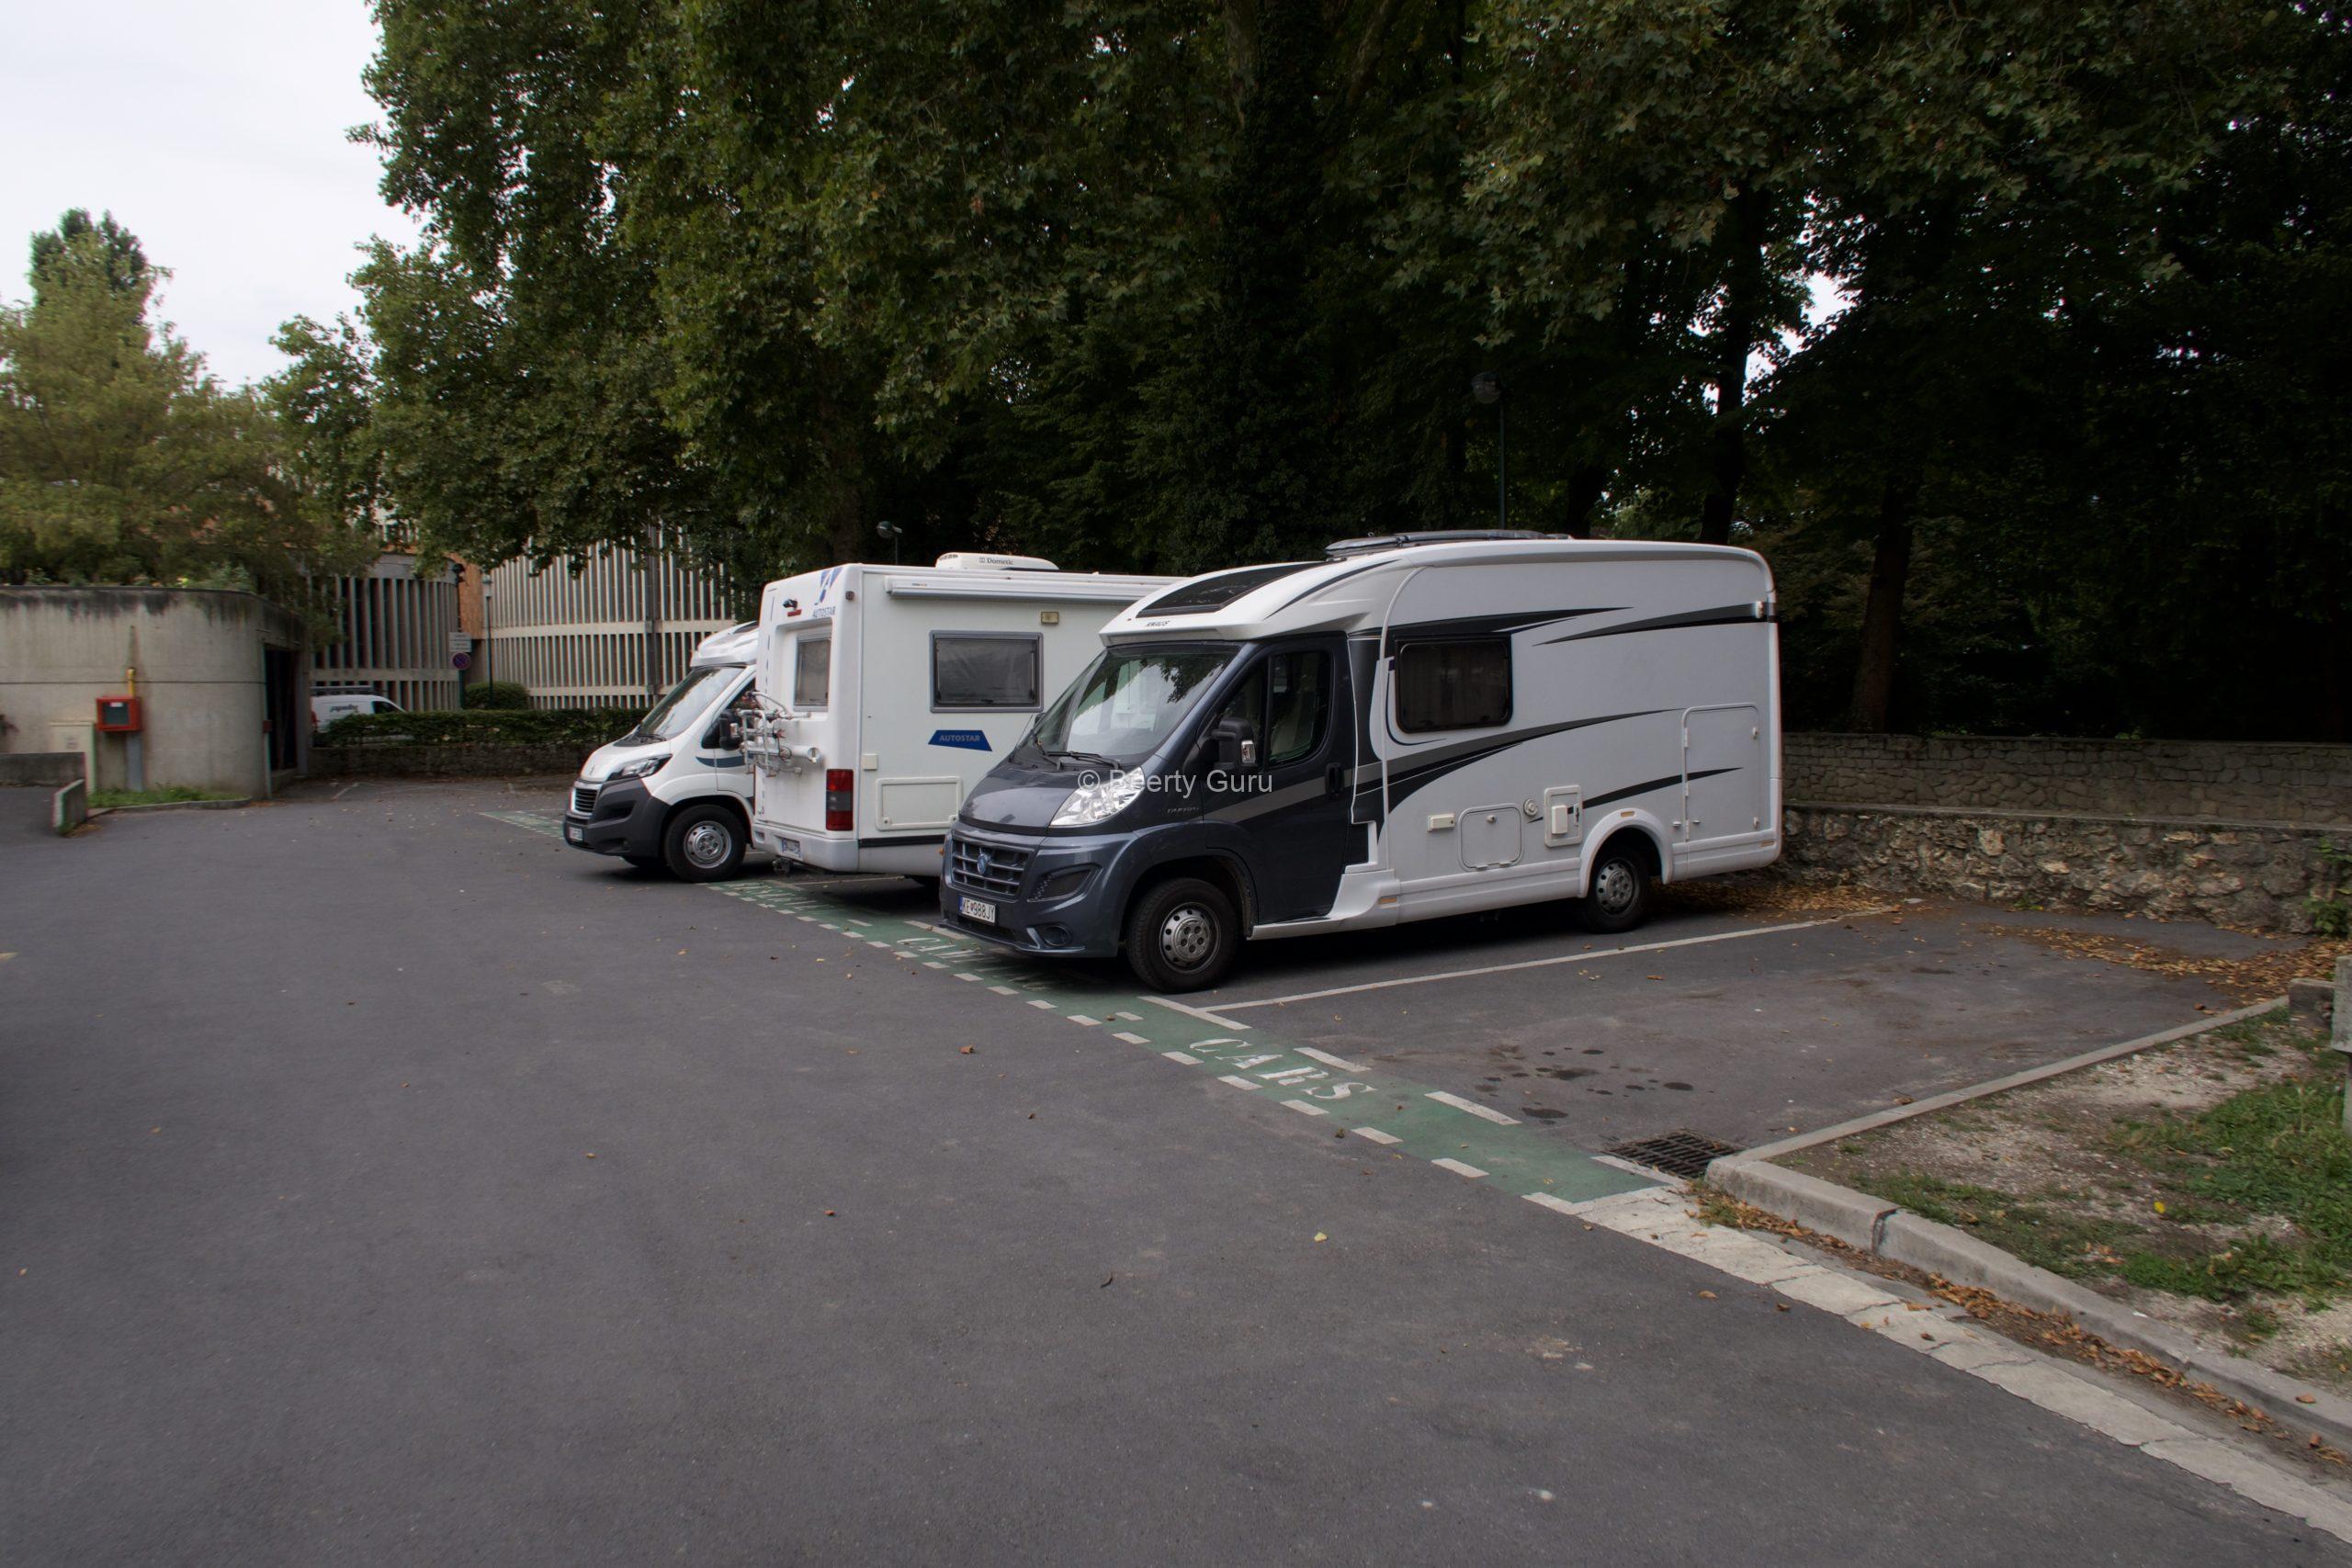 Karavanové parkovisko v Reims